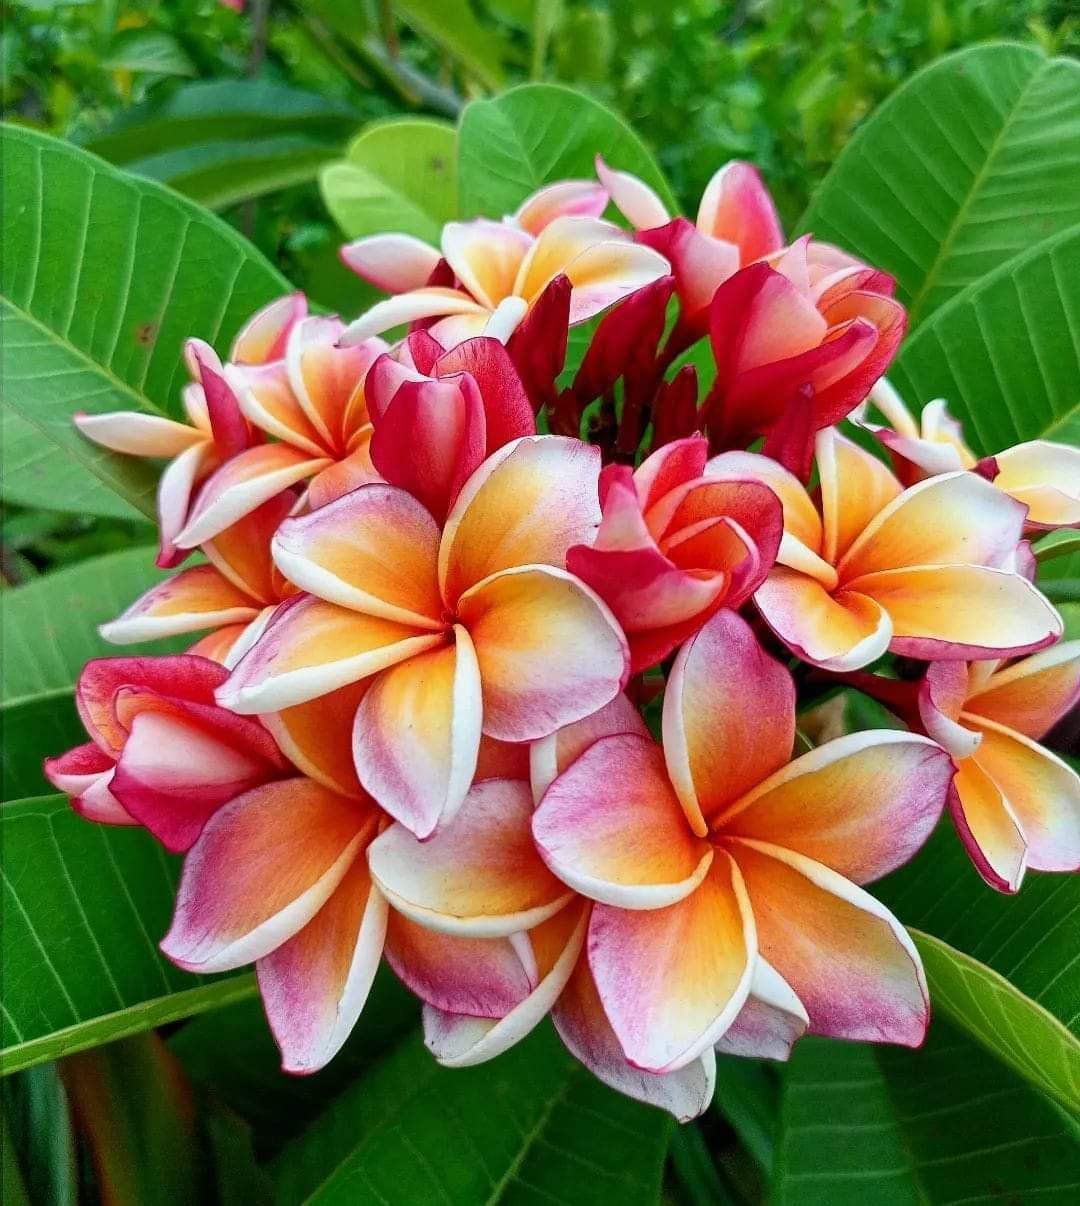 My favorite flowers 🌺🌹